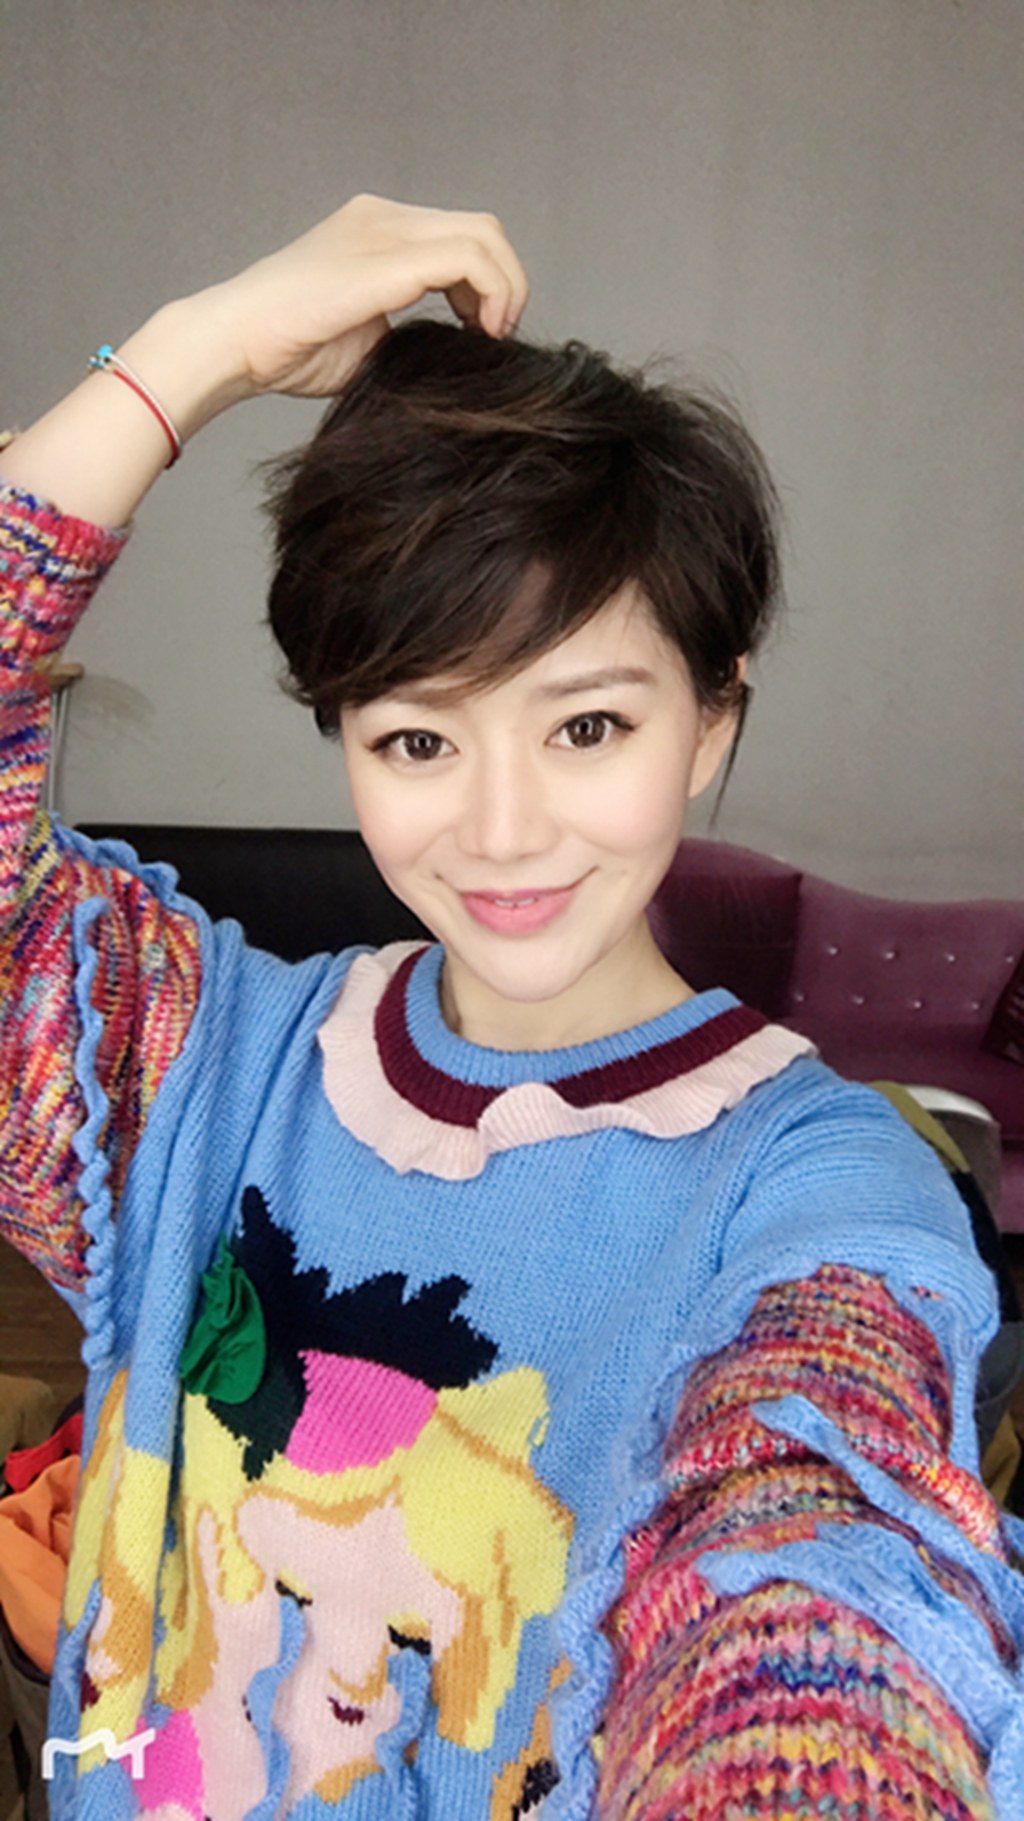 Host Liu Min's picture